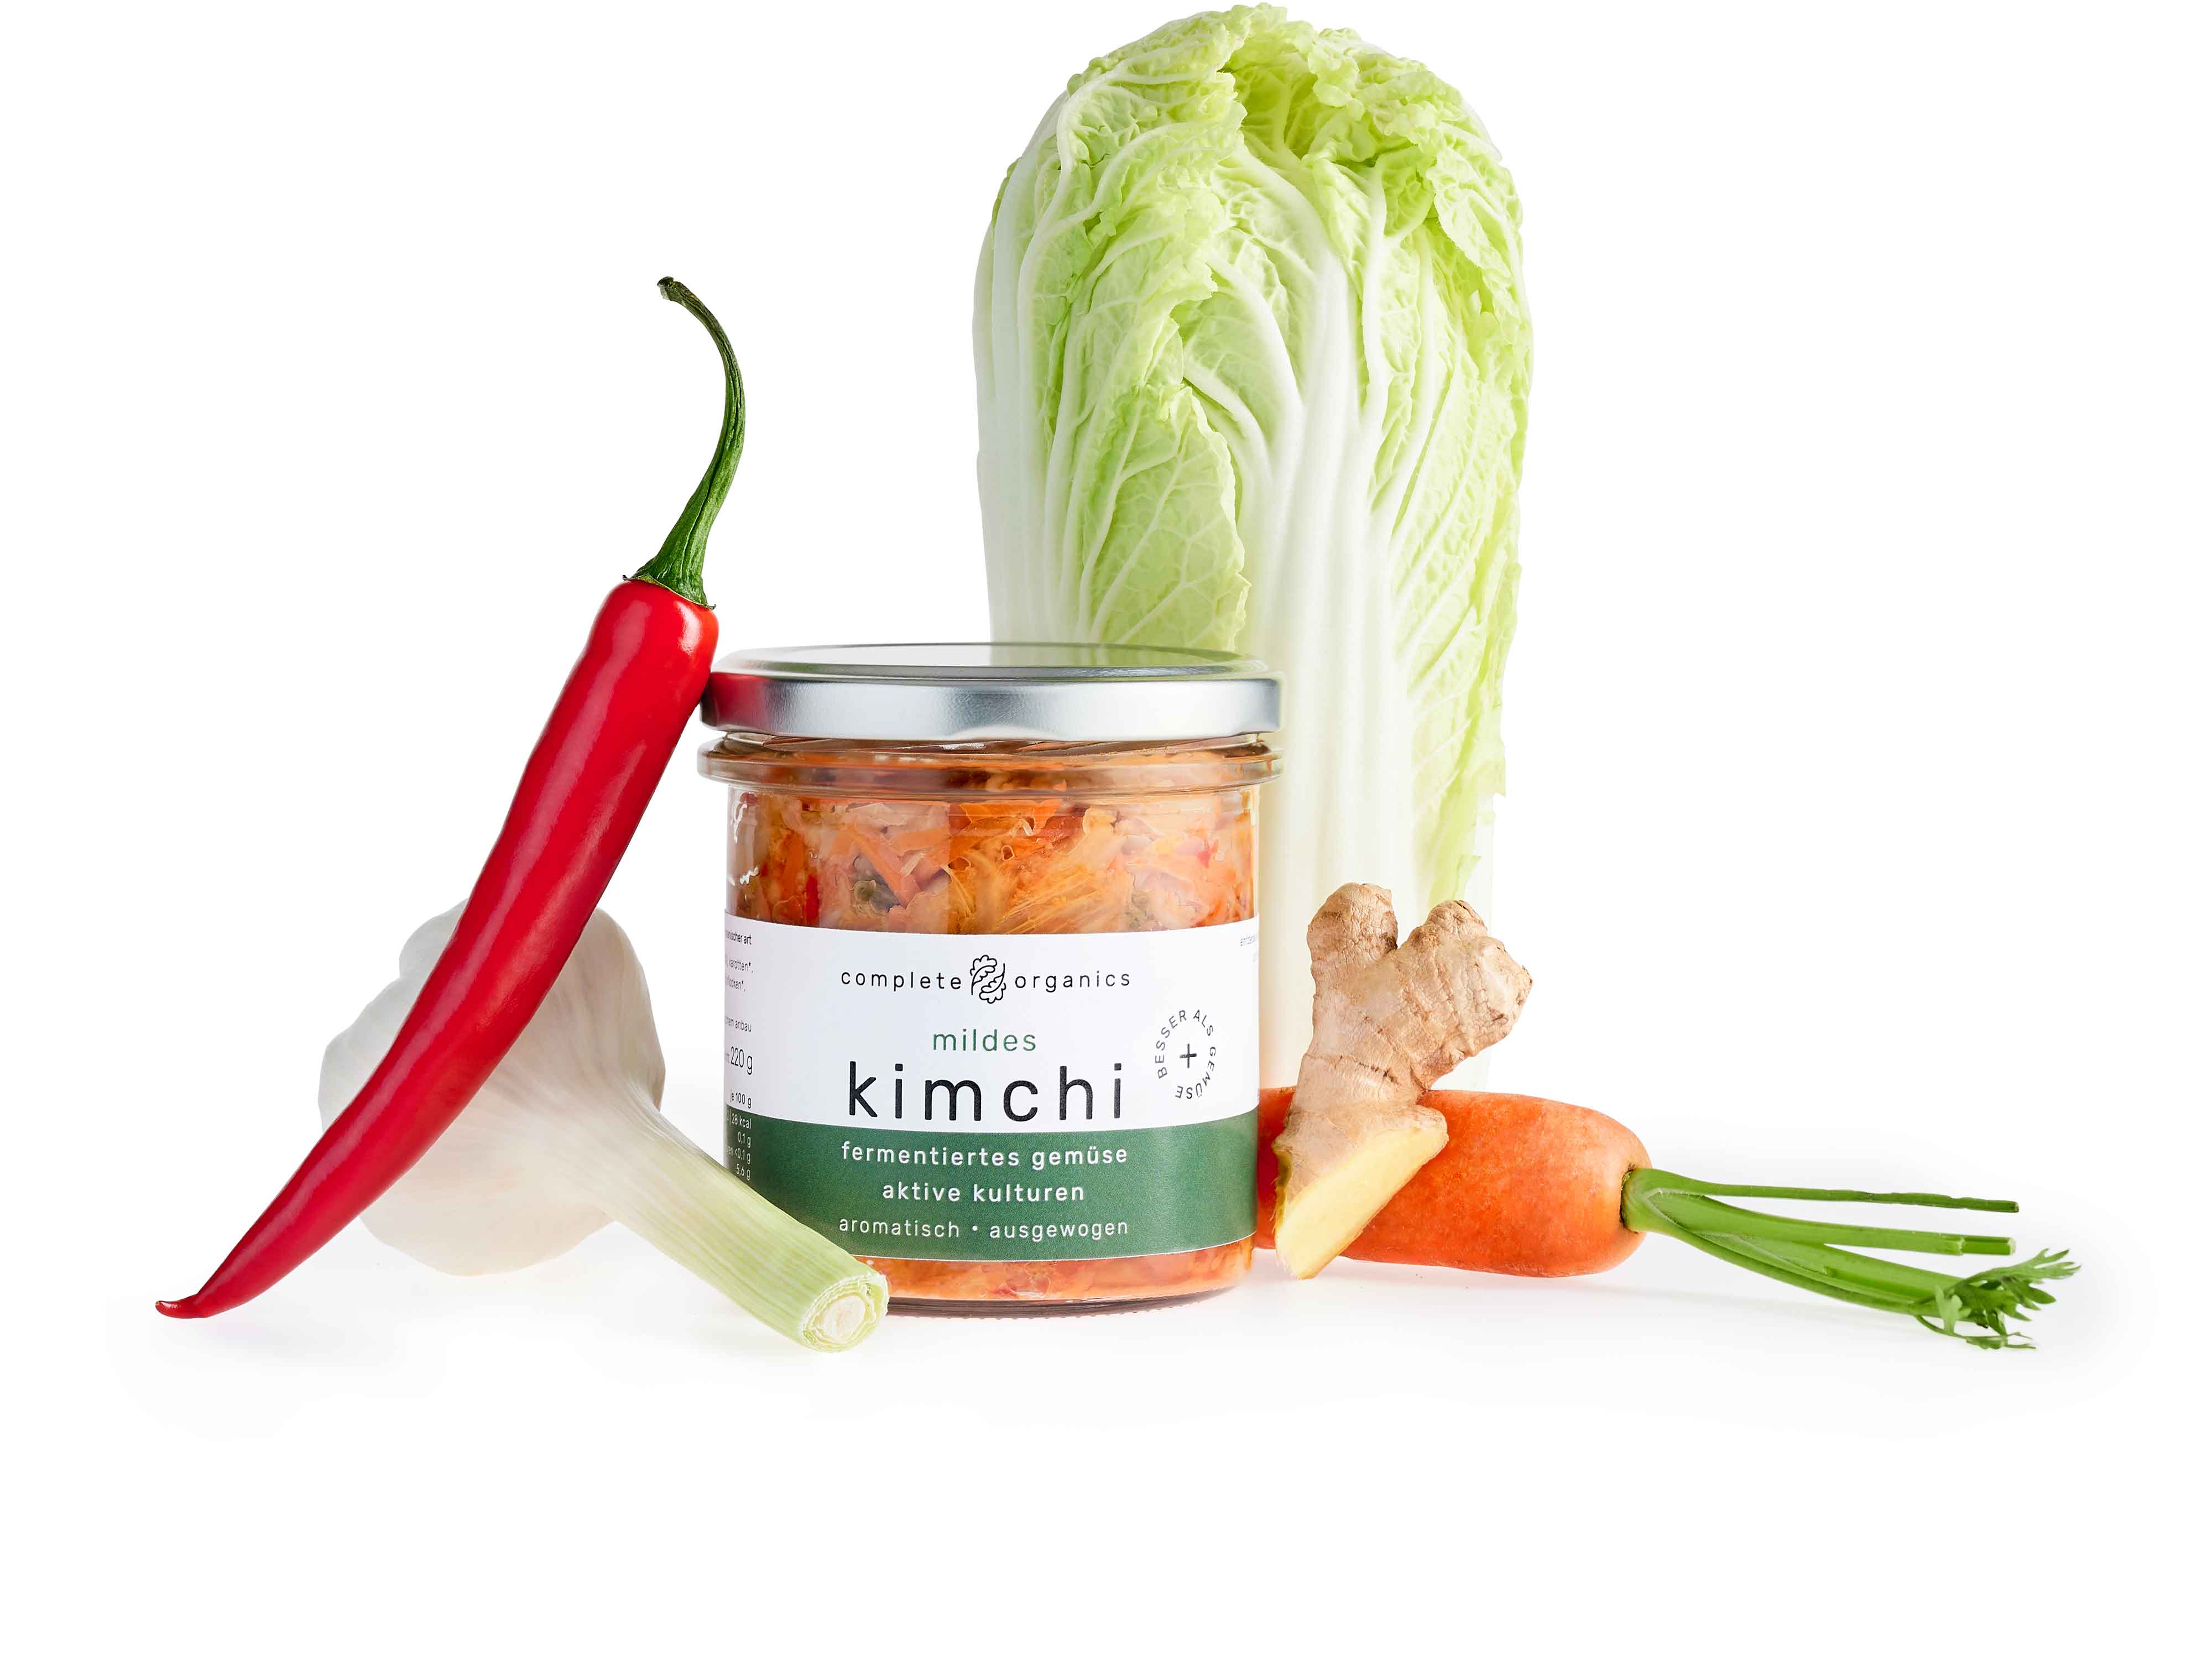 mildes kimchi